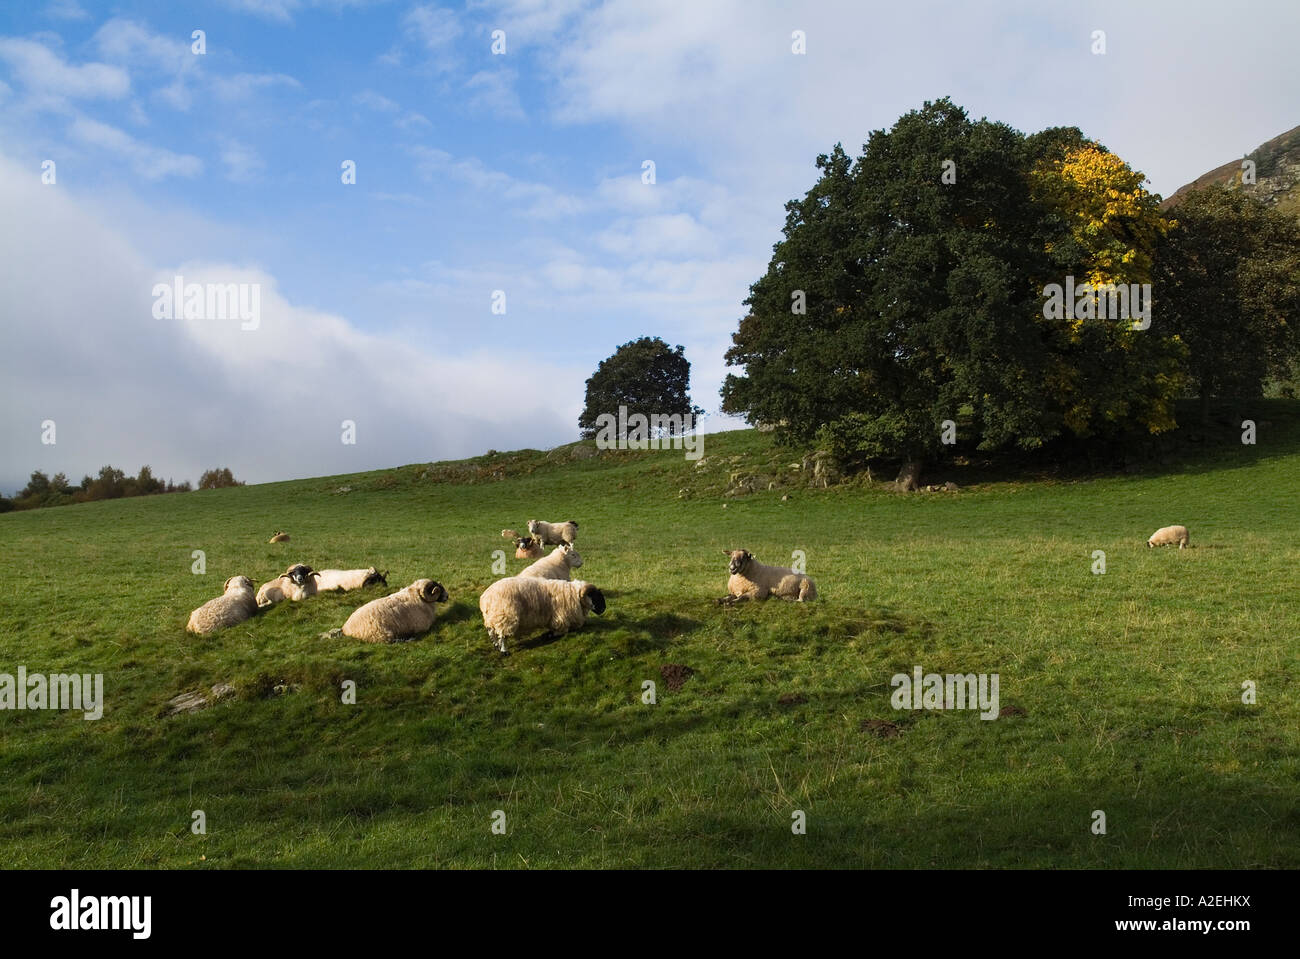 dh Scottish blackface HIGHLANDS PERTHSHIRE Ecosse Flock pâturage en vert champ colline à face noire moutons pâturages ruraux royaume-uni campagne agricole terres agricoles Banque D'Images